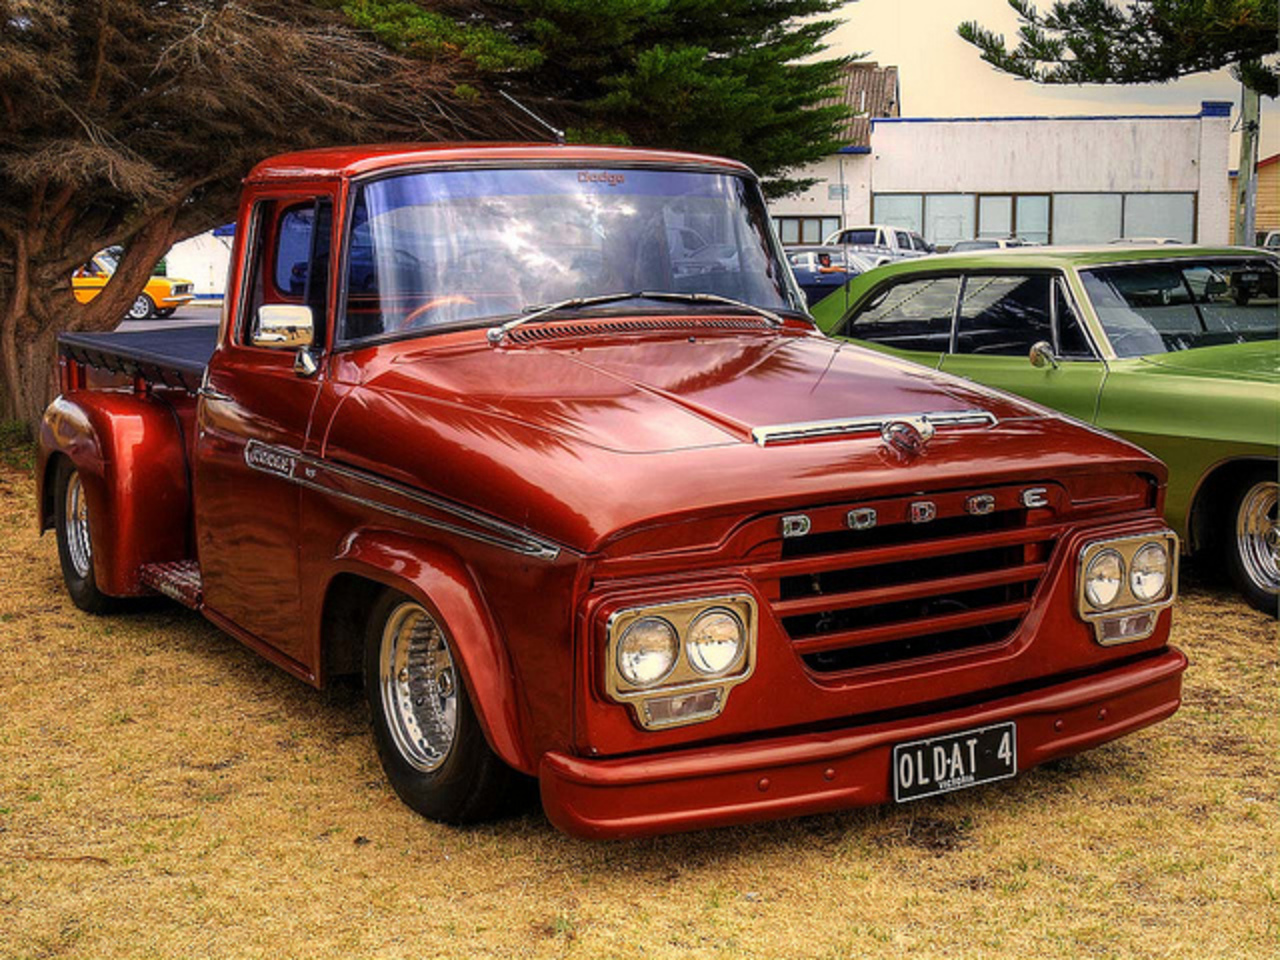 Flickr: The Van - Pickup - Truck & Co. Pool